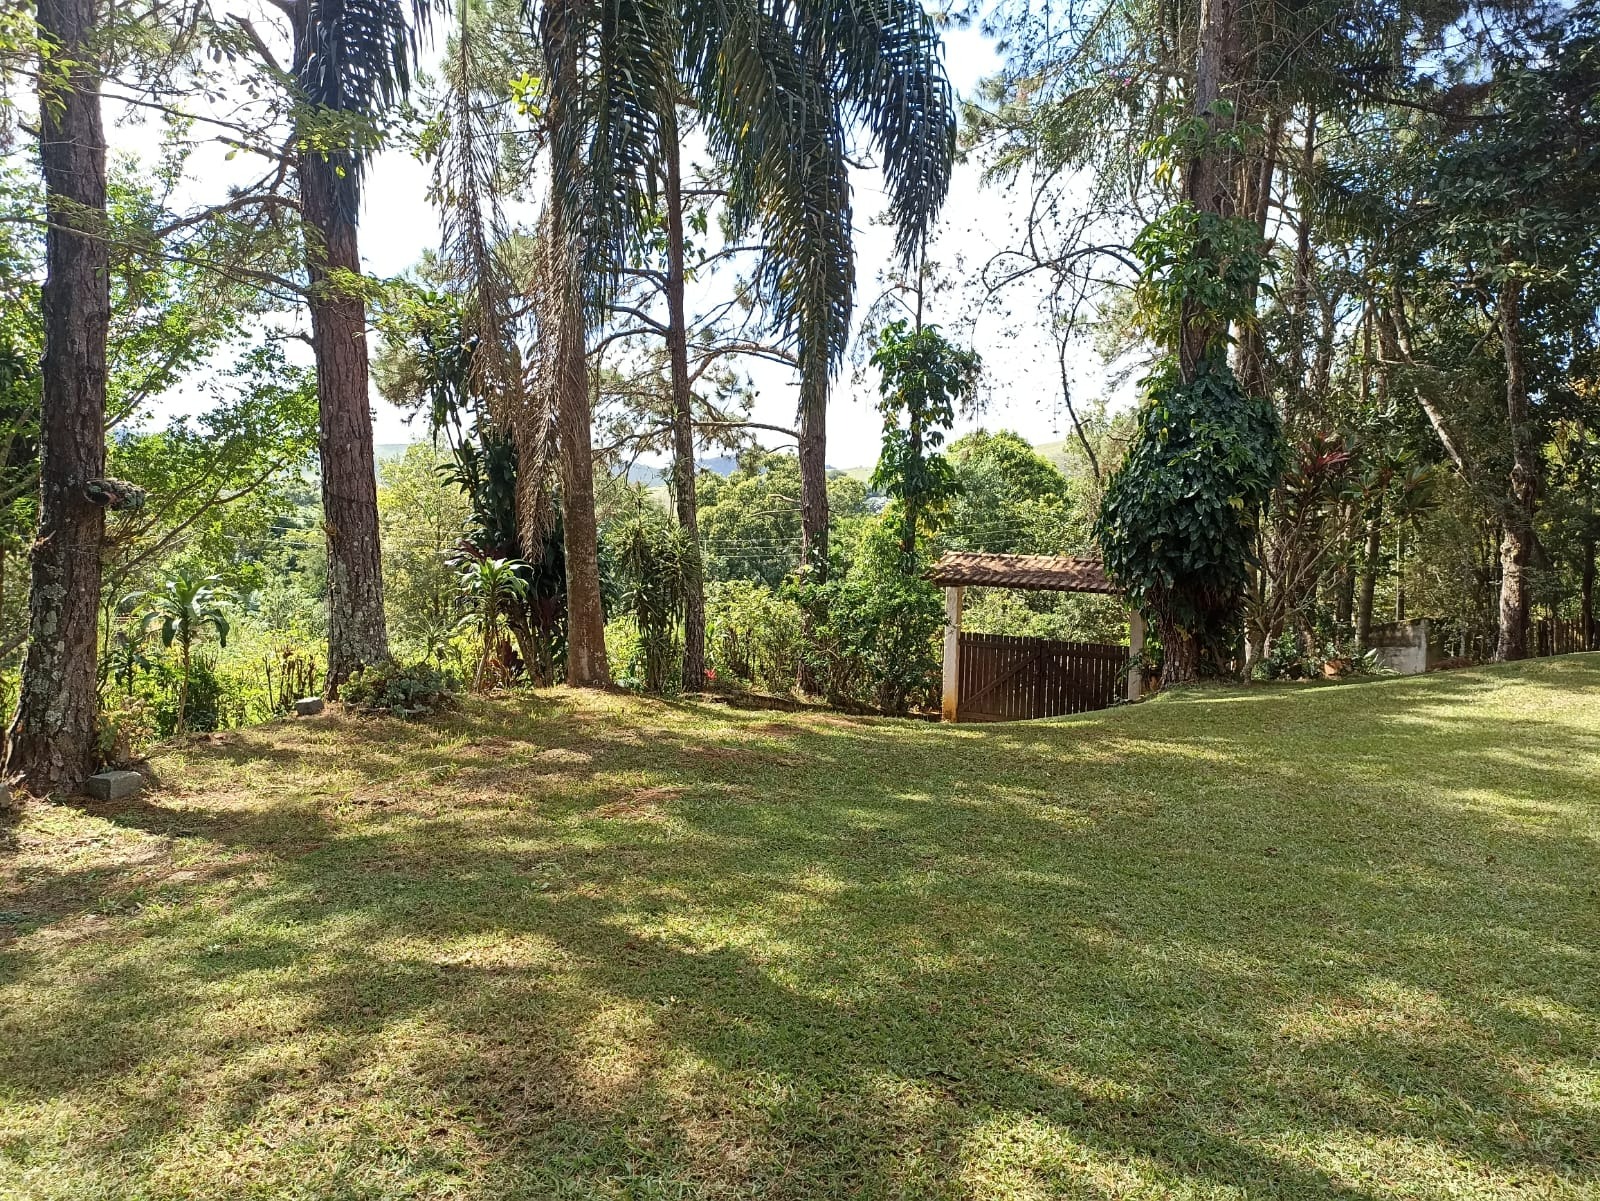 Chácara de 3.600 m² em São José dos Campos, SP